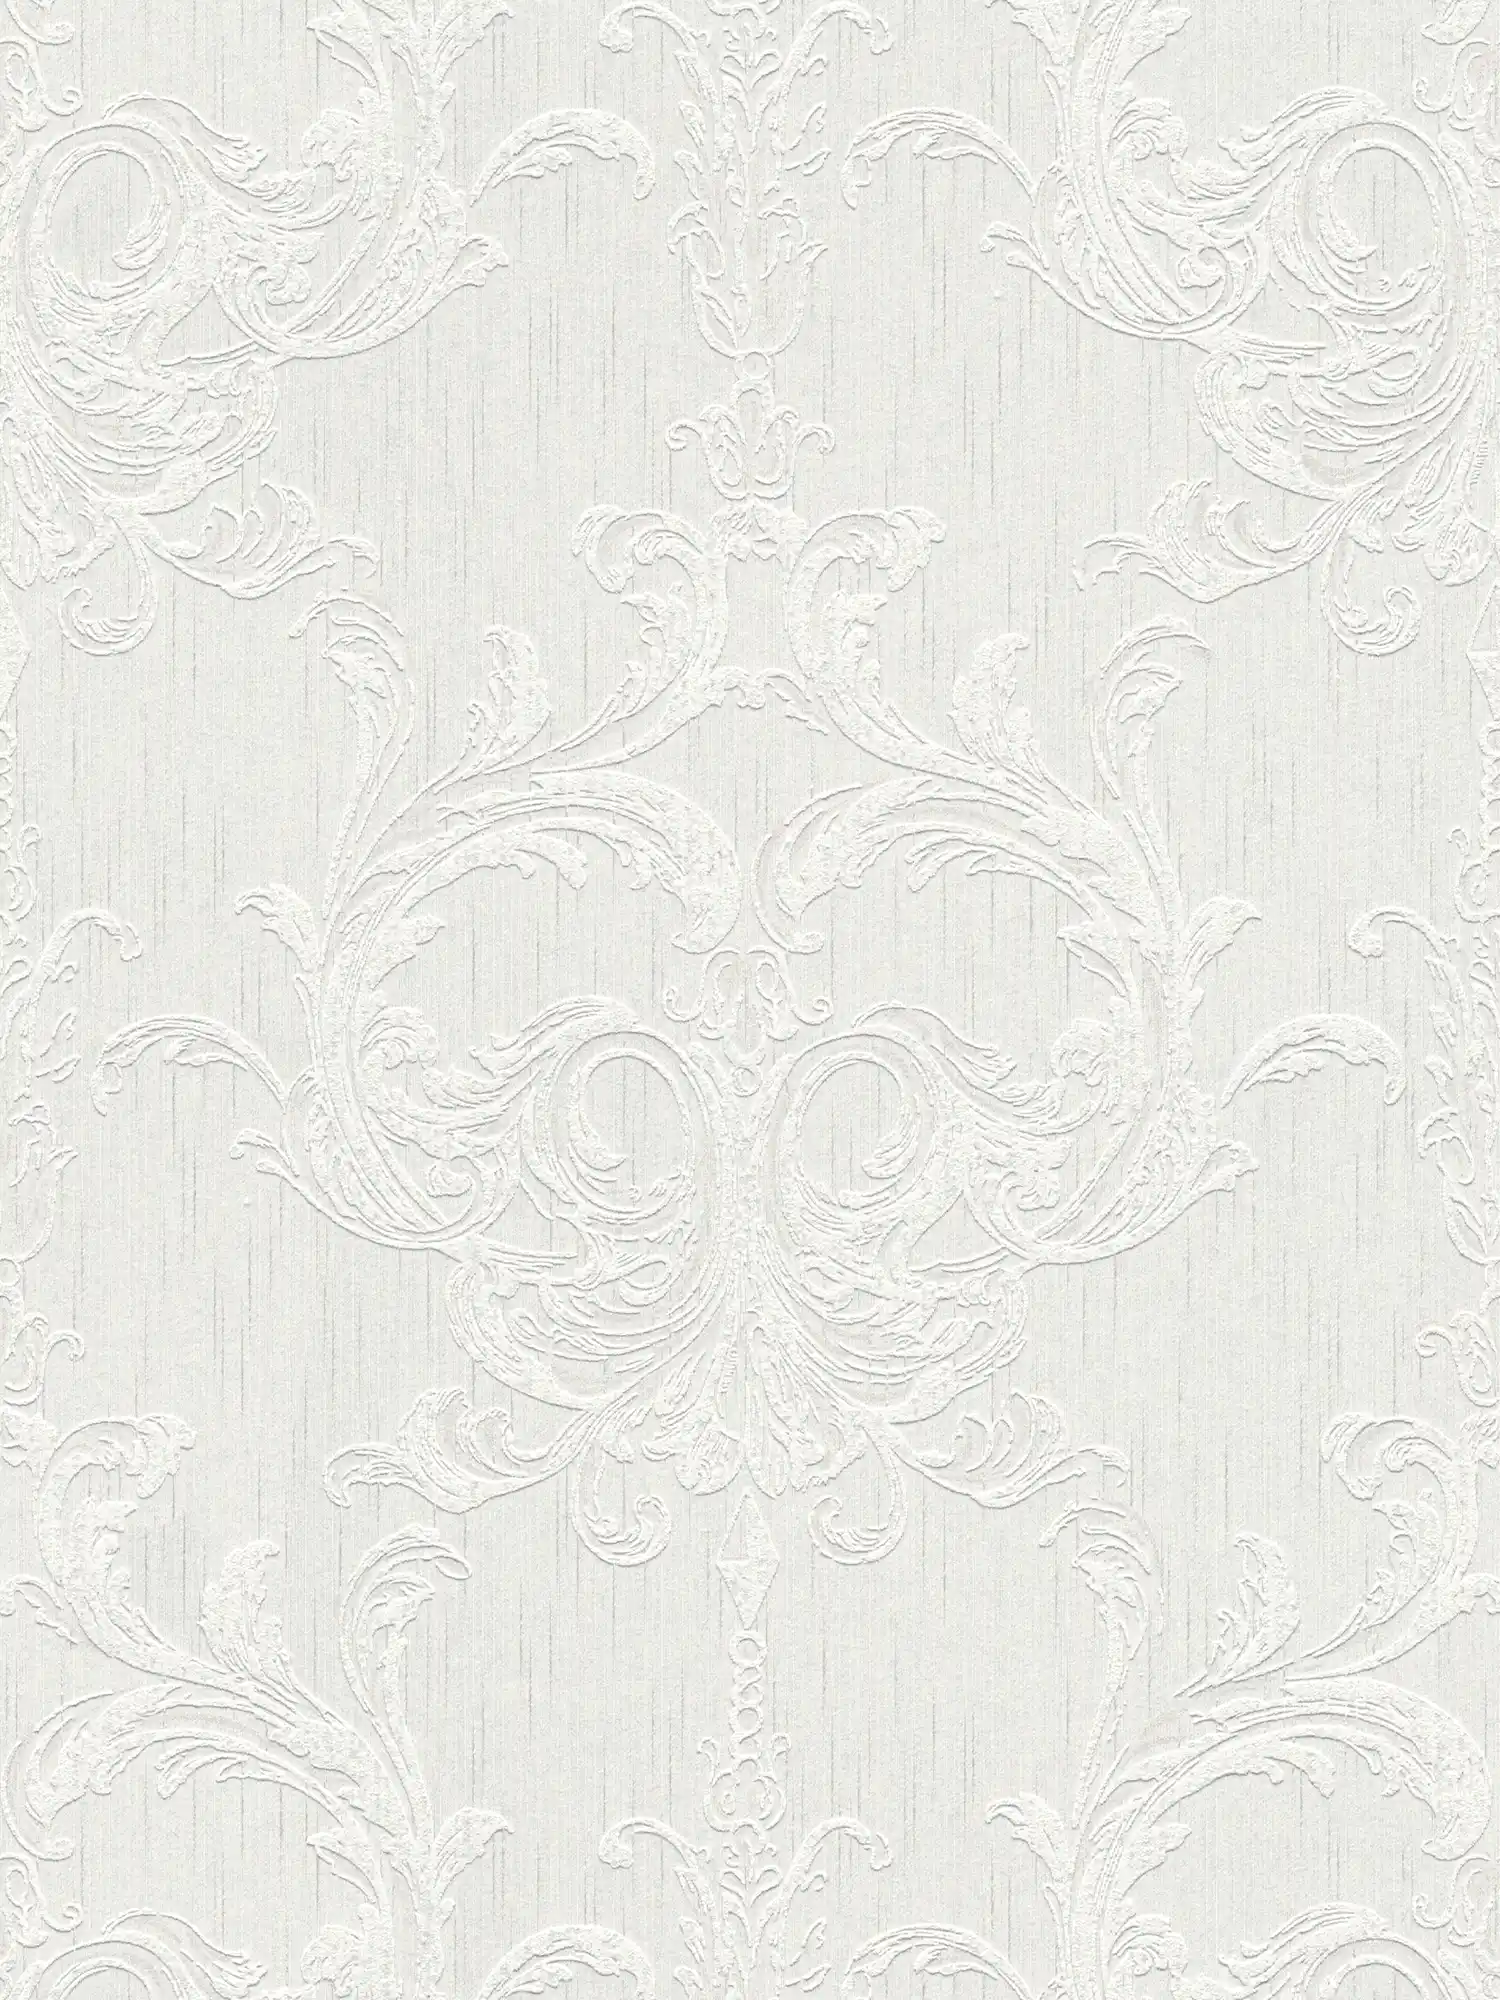 Ornamenteel behang met stucco dessin & pleister look - grijs, wit
